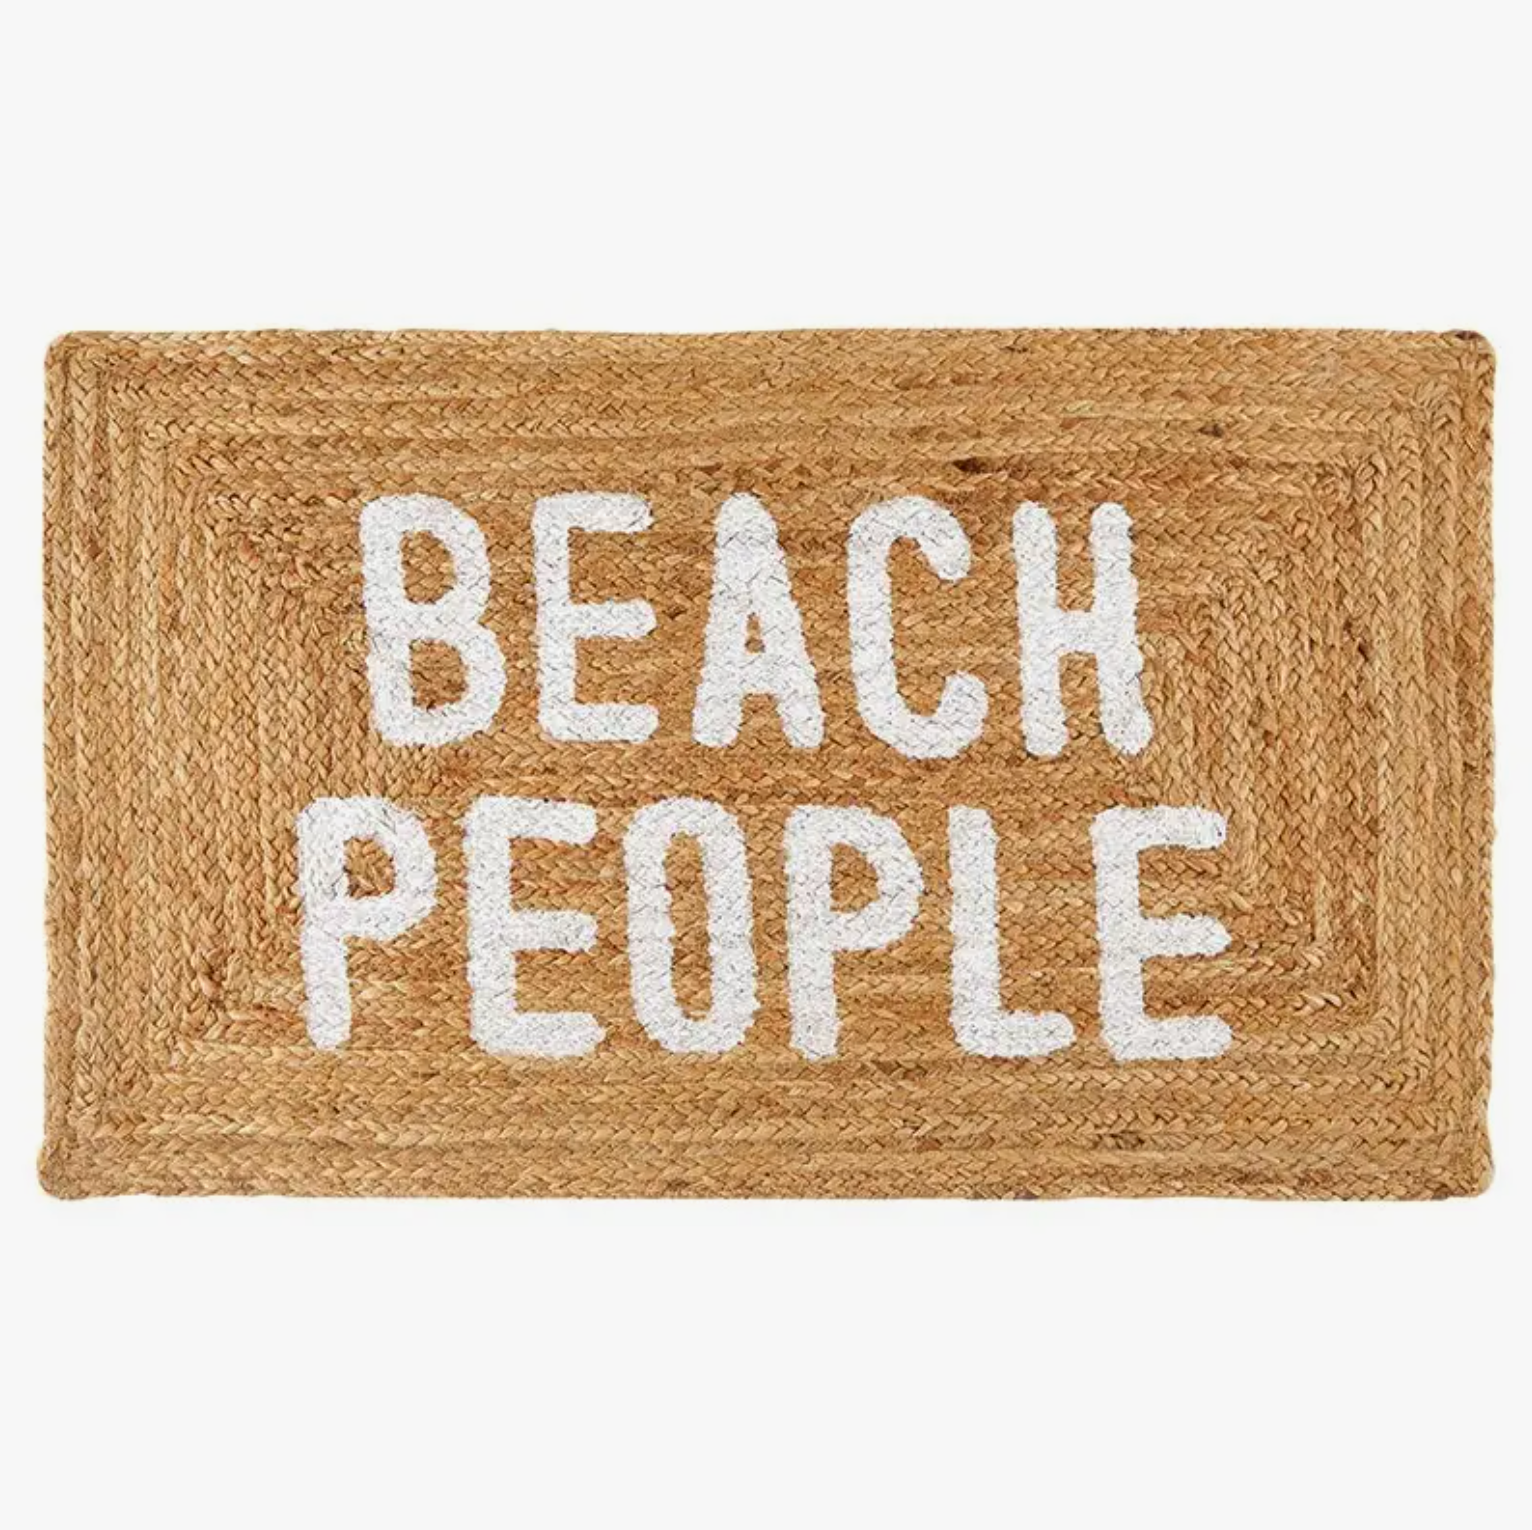 Beach People - Jute